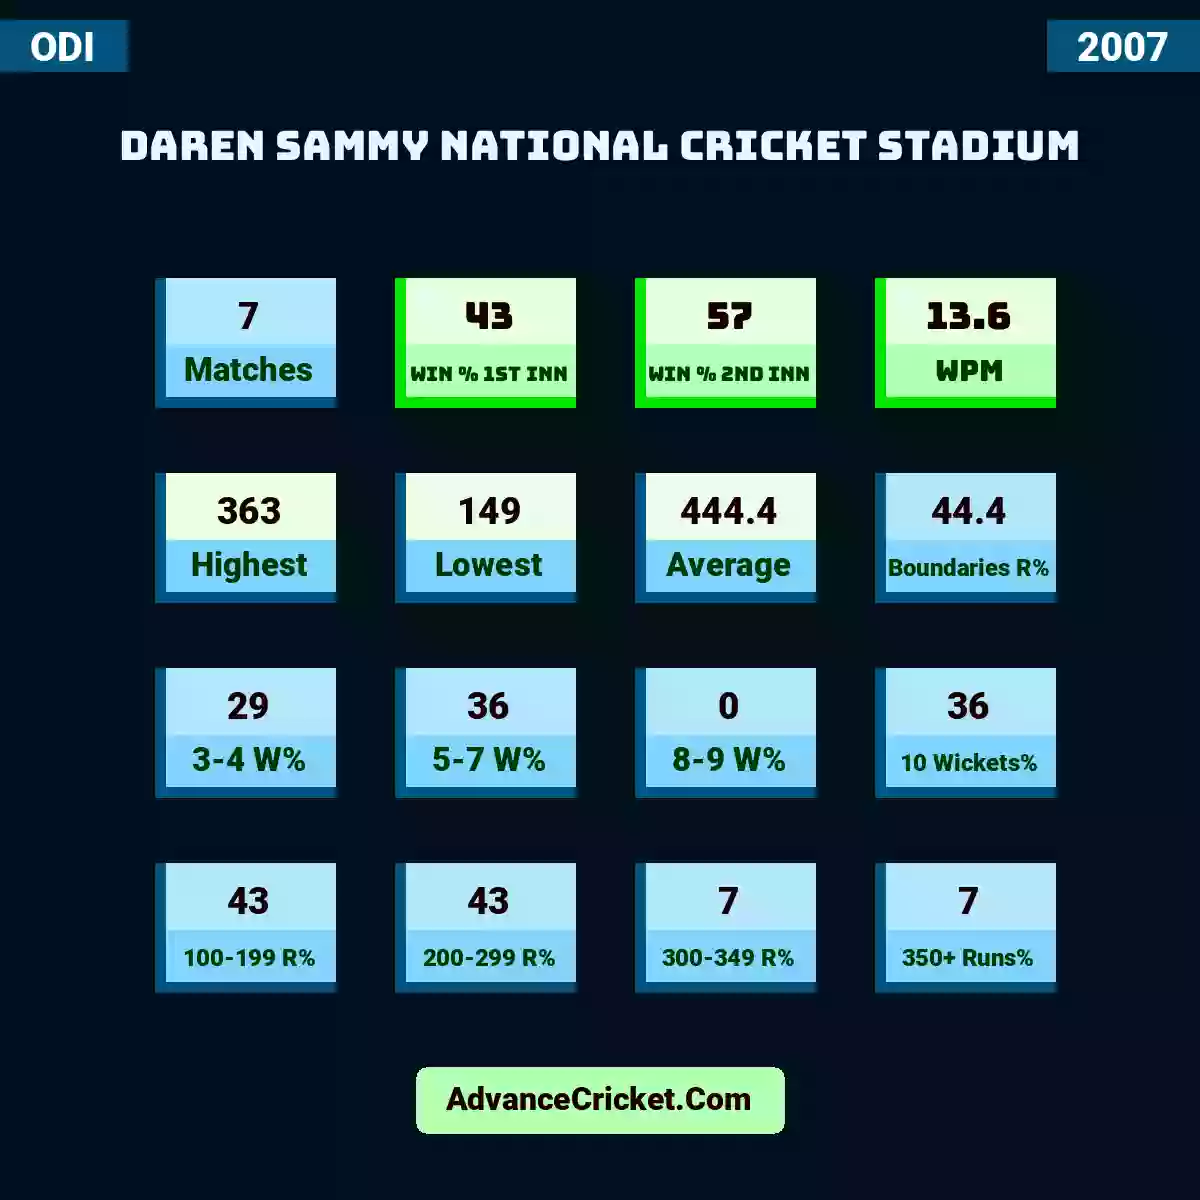 Image showing Daren Sammy National Cricket Stadium with Matches: 7, Win % 1st Inn: 43, Win % 2nd Inn: 57, WPM: 13.6, Highest: 363, Lowest: 149, Average: 444.4, Boundaries R%: 44.4, 3-4 W%: 29, 5-7 W%: 36, 8-9 W%: 0, 10 Wickets%: 36, 100-199 R%: 43, 200-299 R%: 43, 300-349 R%: 7, 350+ Runs%: 7.